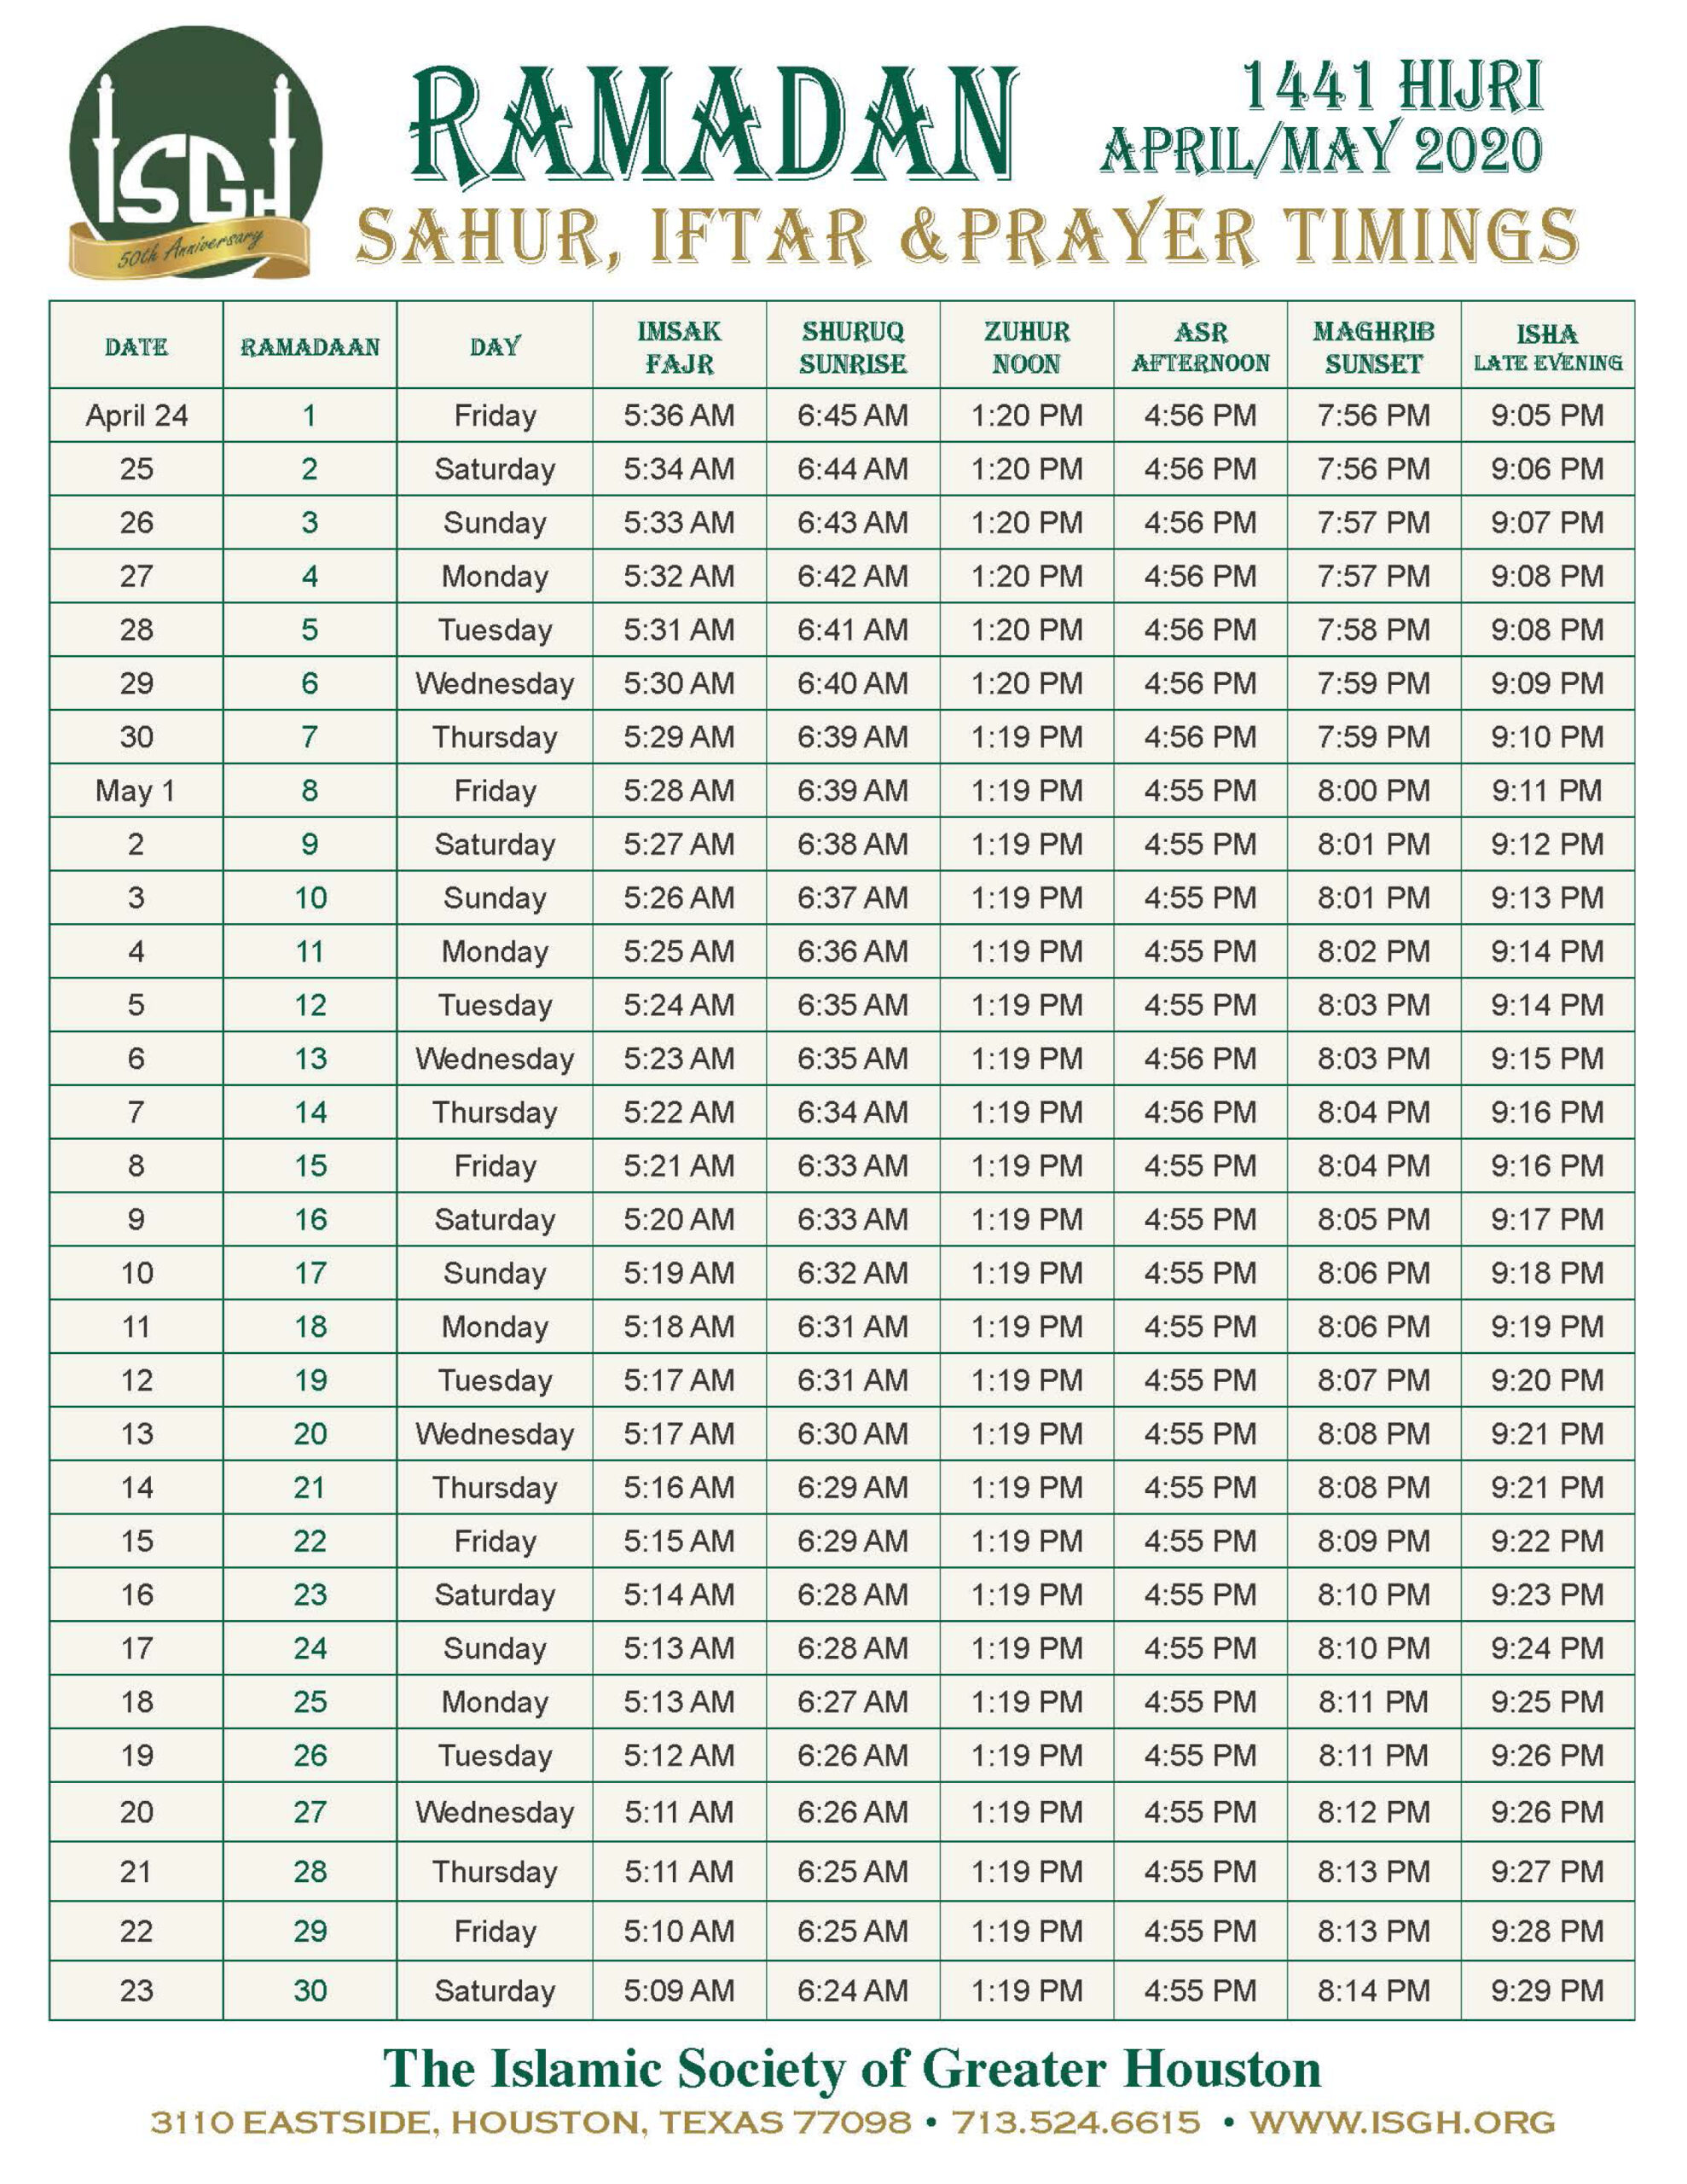 ramadan 2021 calendar houston Ramadan Schedule 1441 2020 Islamic Society Of Greater Houston ramadan 2021 calendar houston